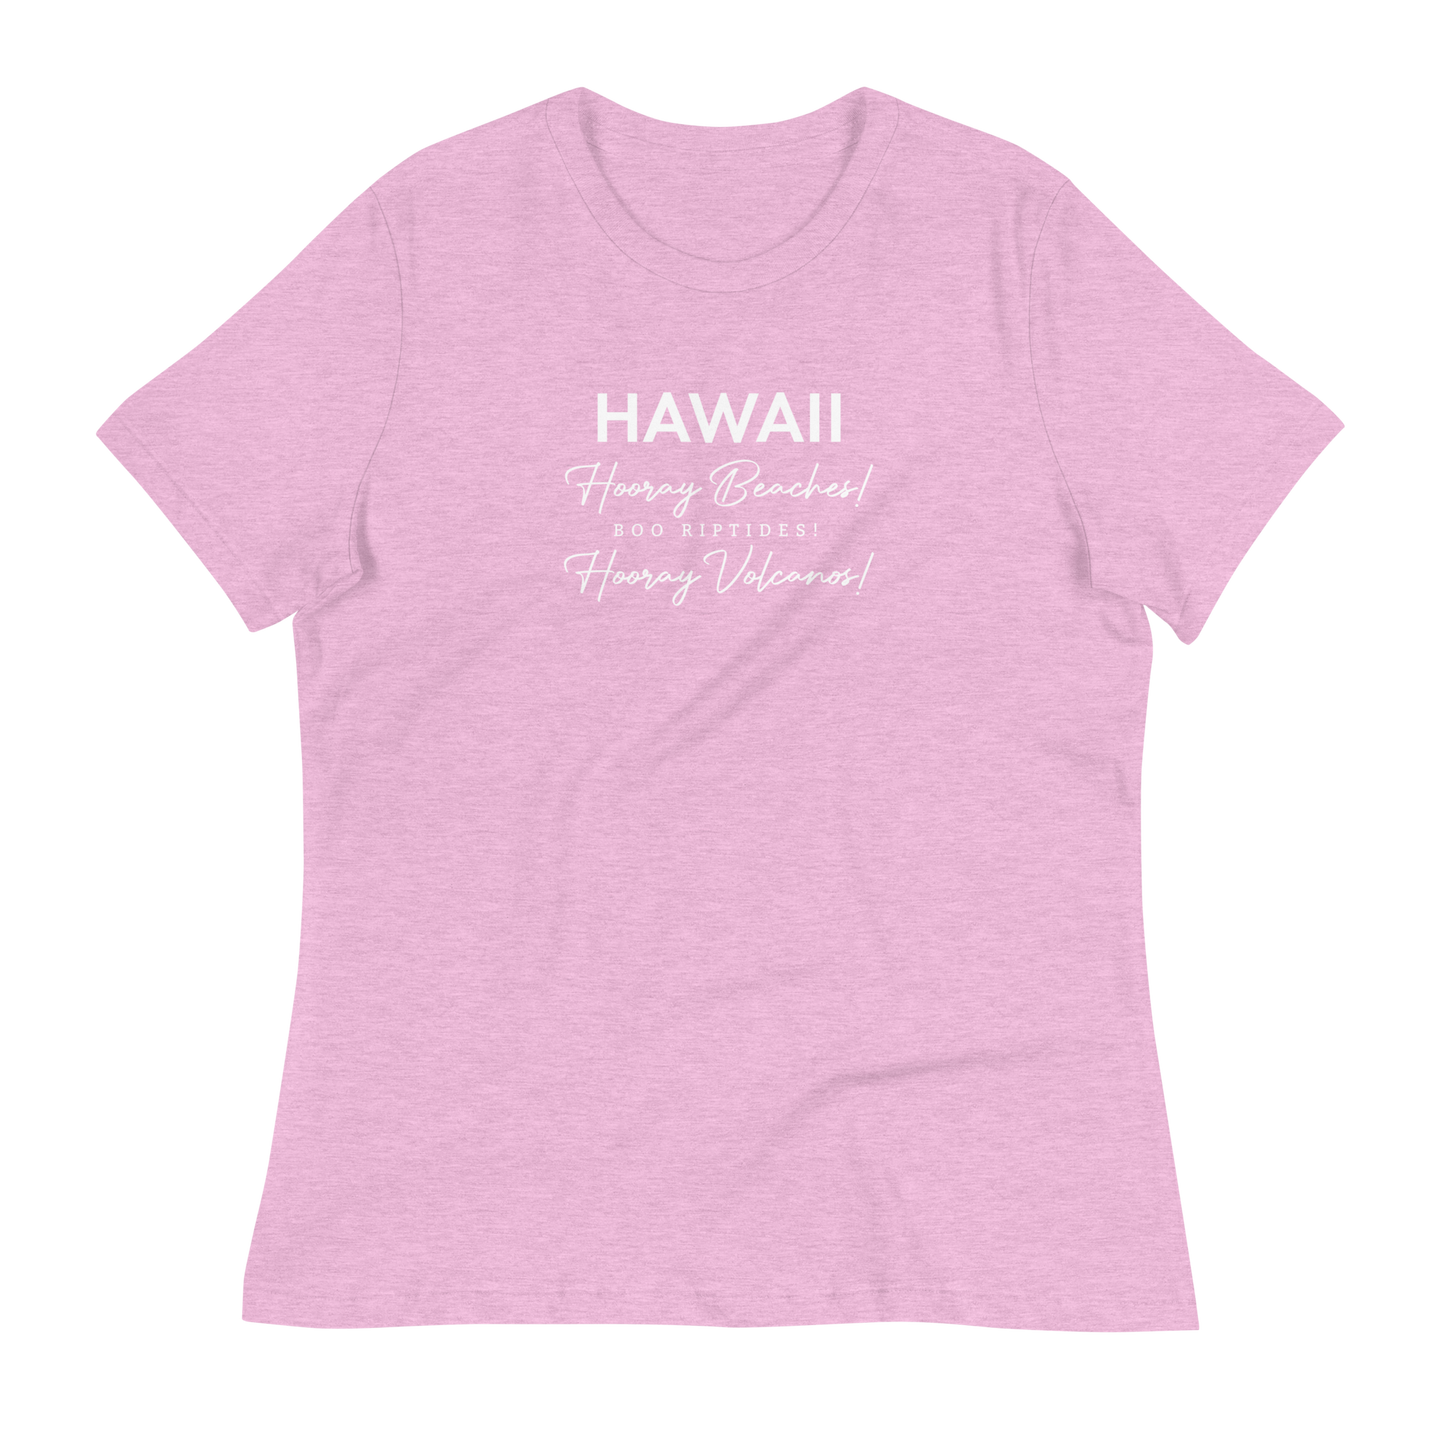 Women's - HAWAII - Hooray Beaches! Boo Riptides! Hooray Volcanos! Funny T-Shirt